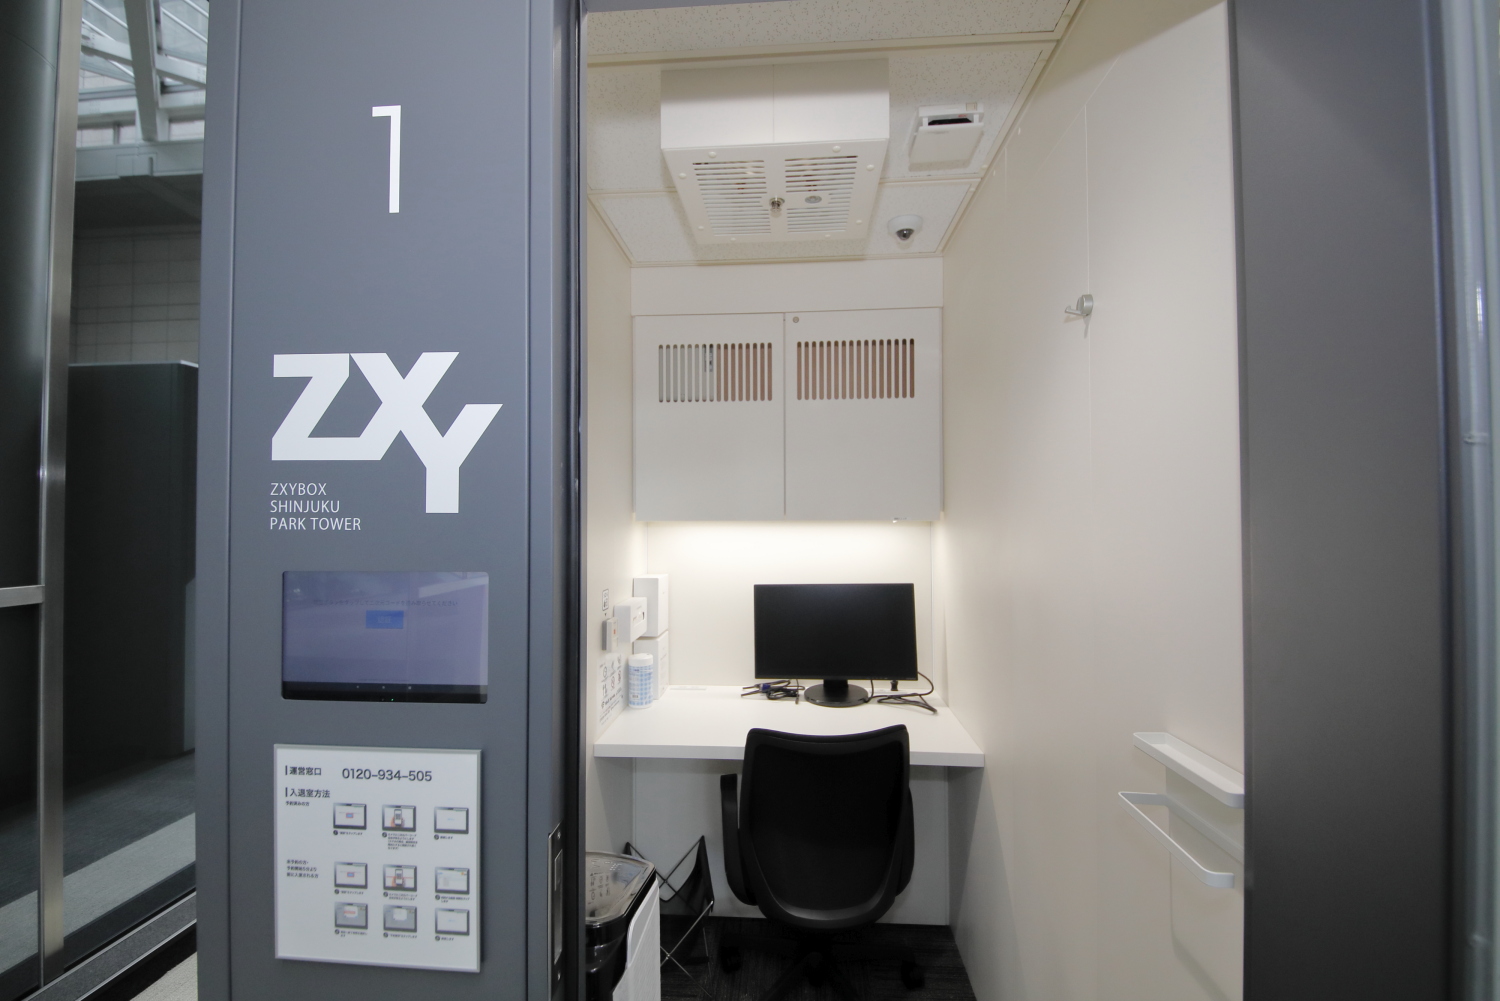 ZXY［ジザイ］BOX新宿パークタワー | サテライトオフィスサービス 